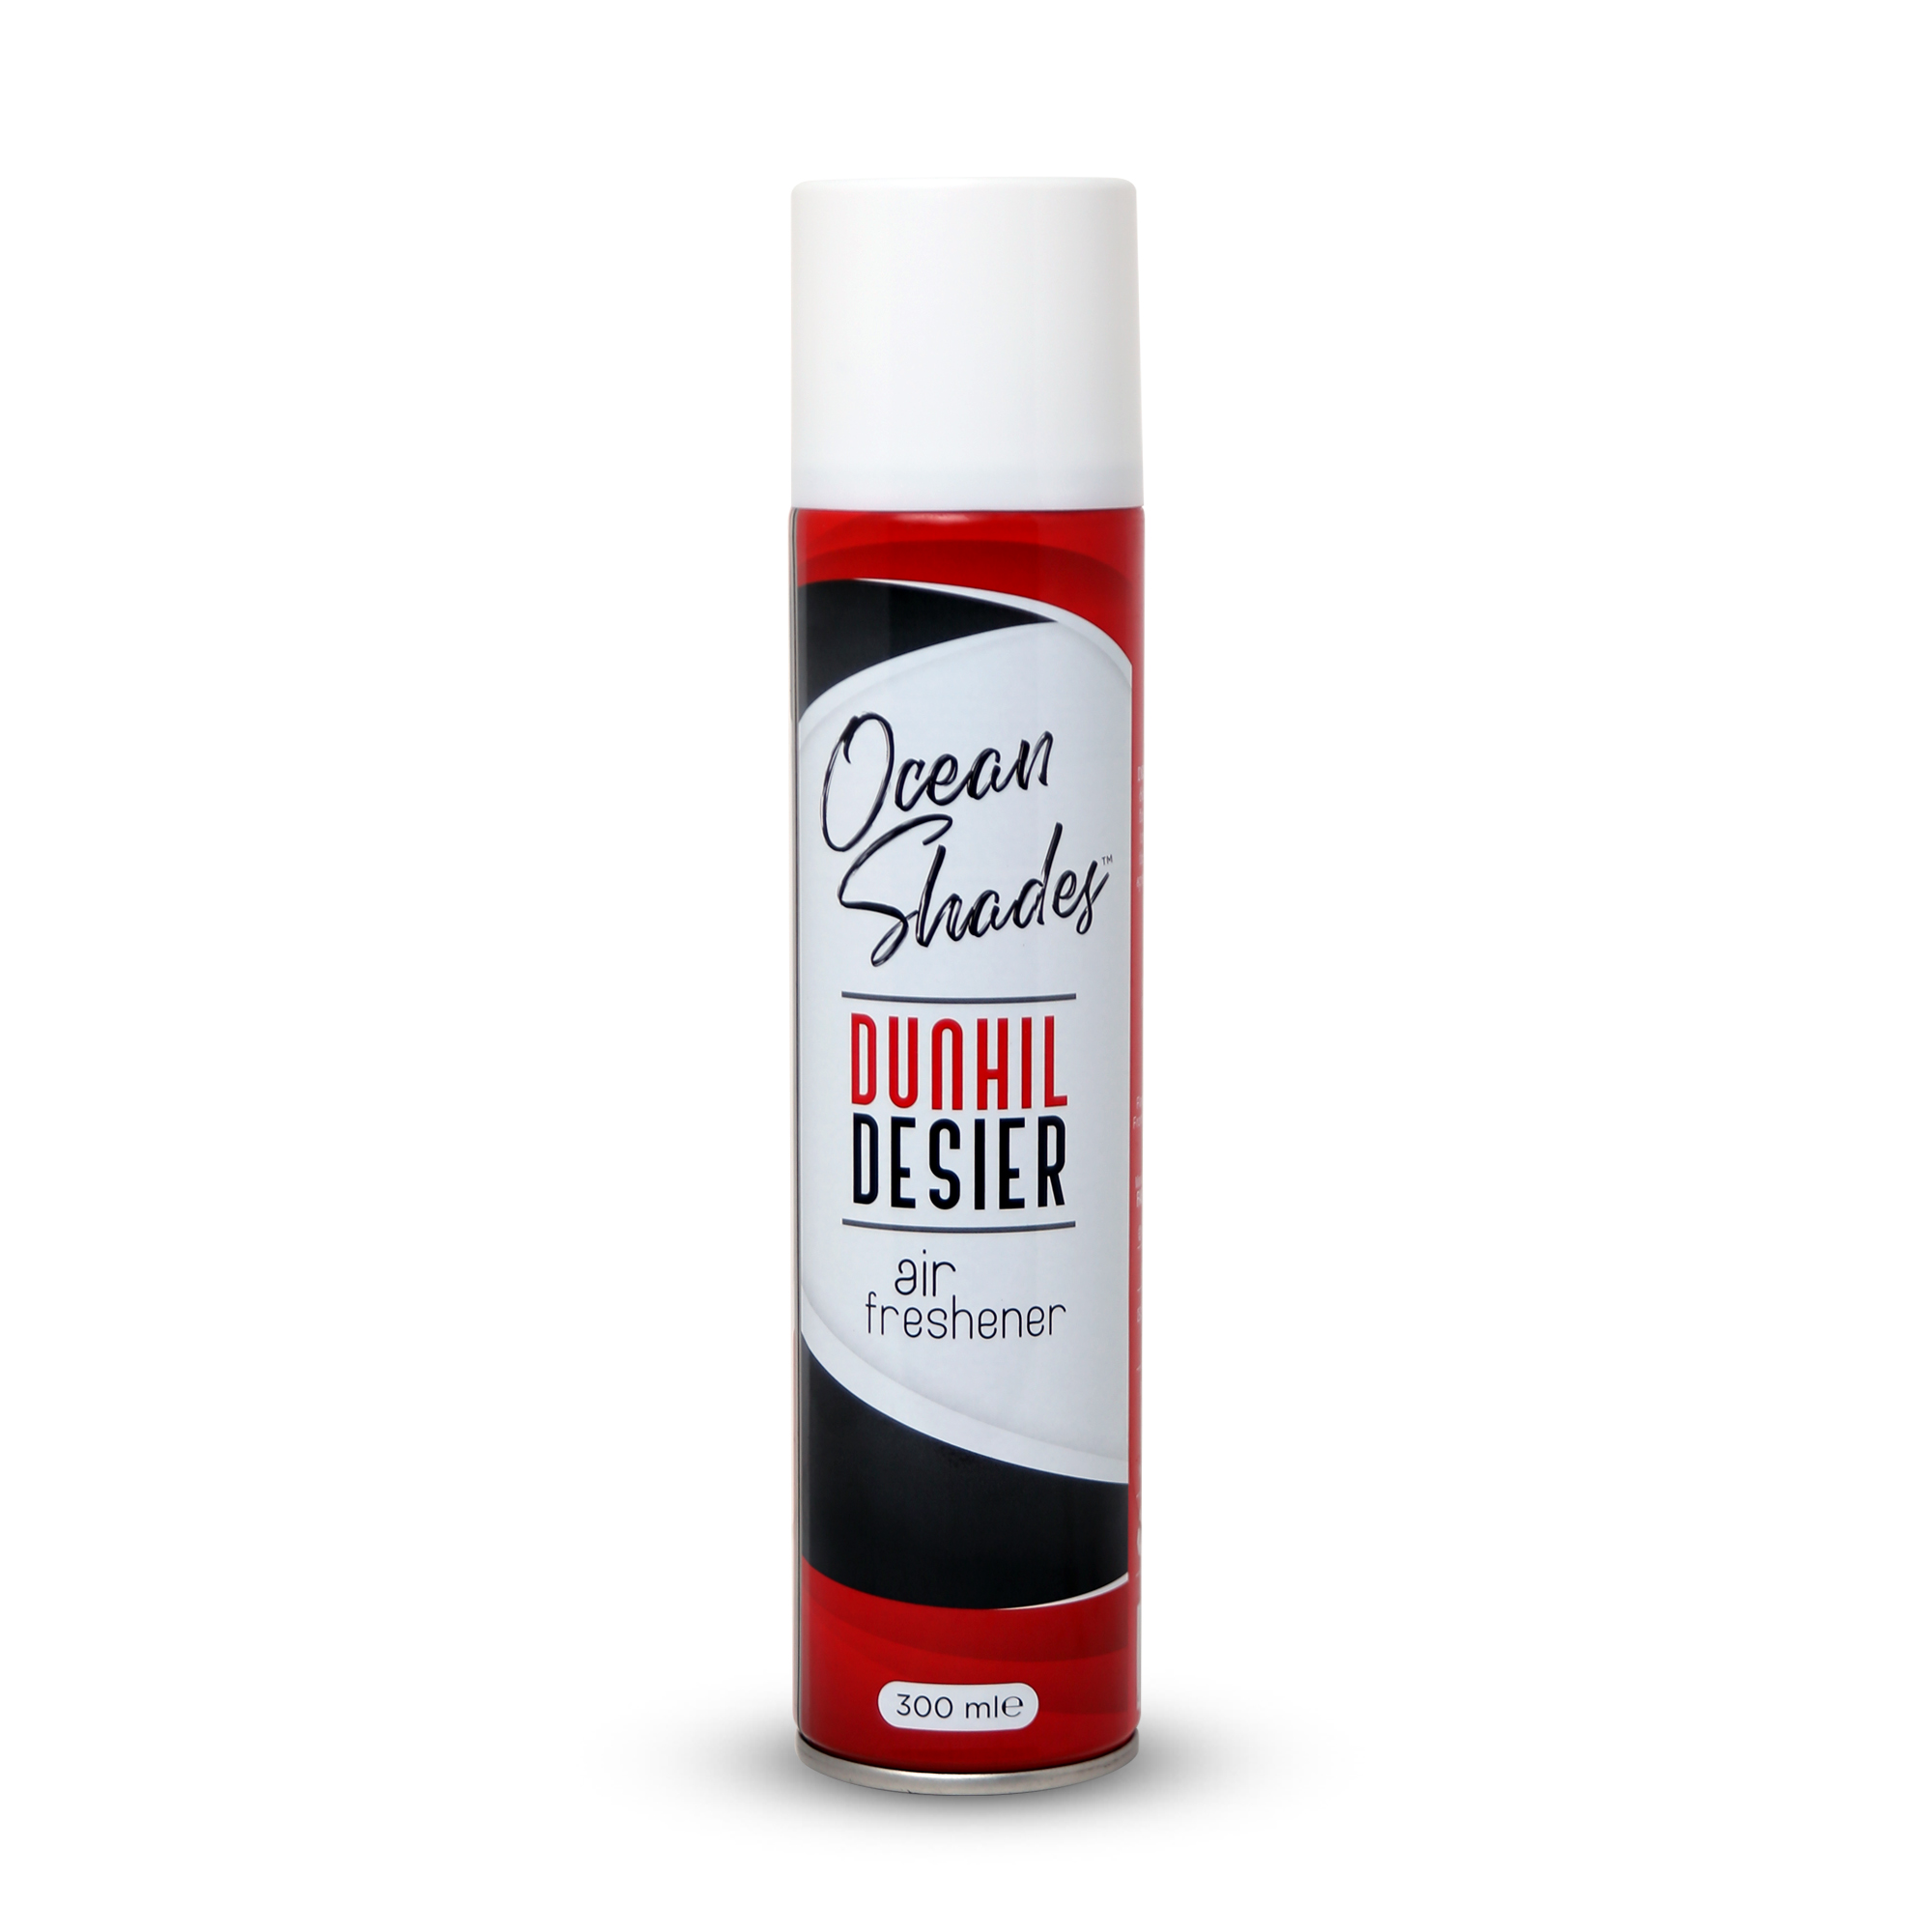 Ocean Shades Dunhill Desier Air Freshener (Room Spray)